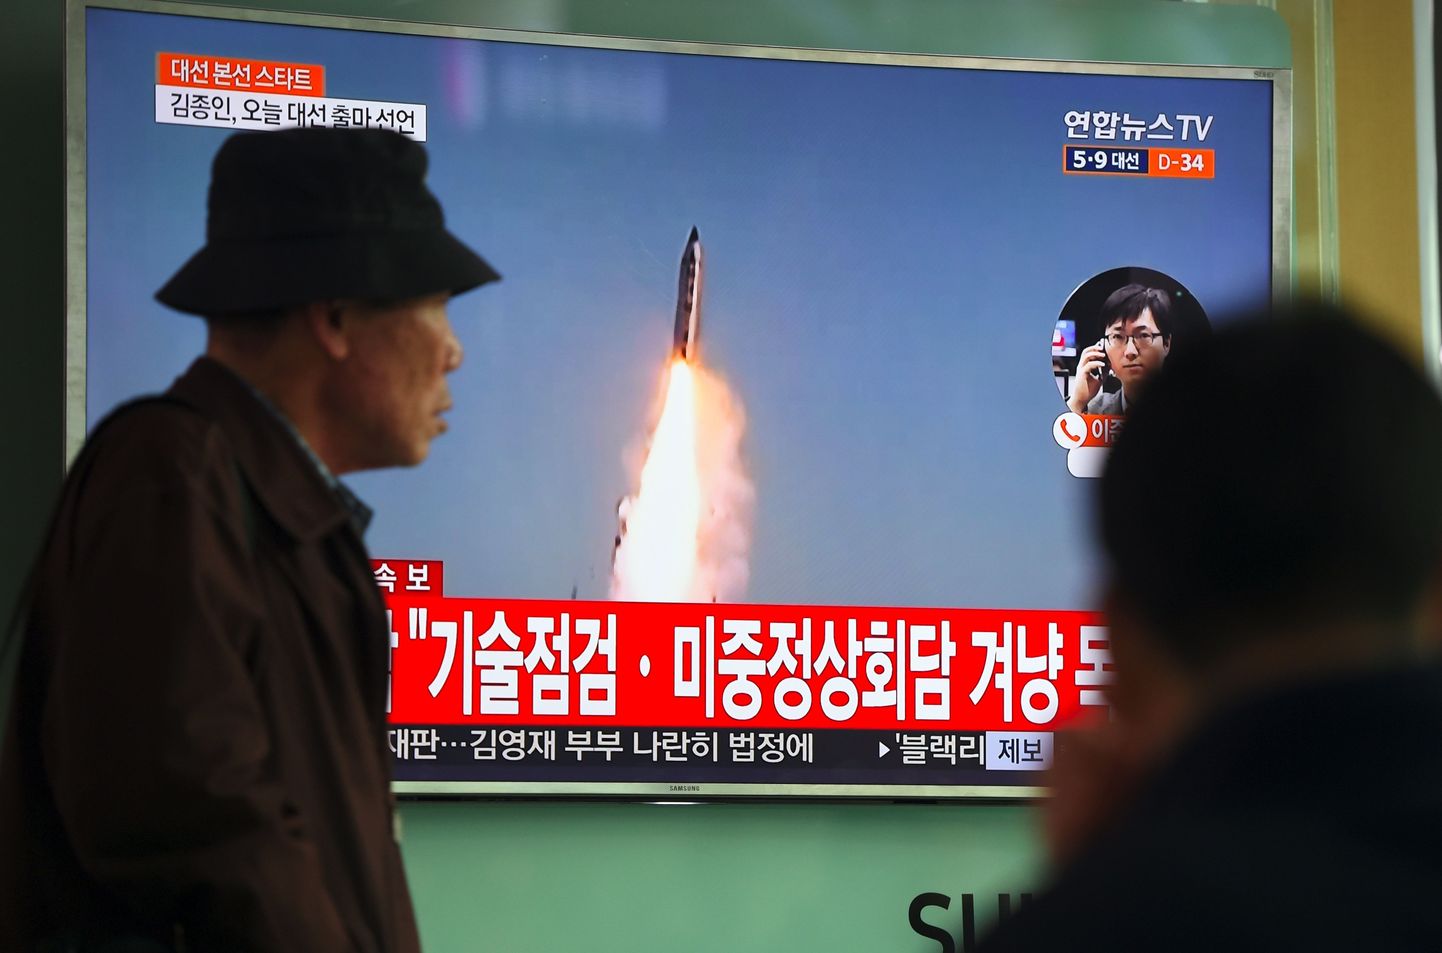 Teleekraan Souli raudteejaamas näitab kaadreid Põhja-Korea raketikatsetusest.